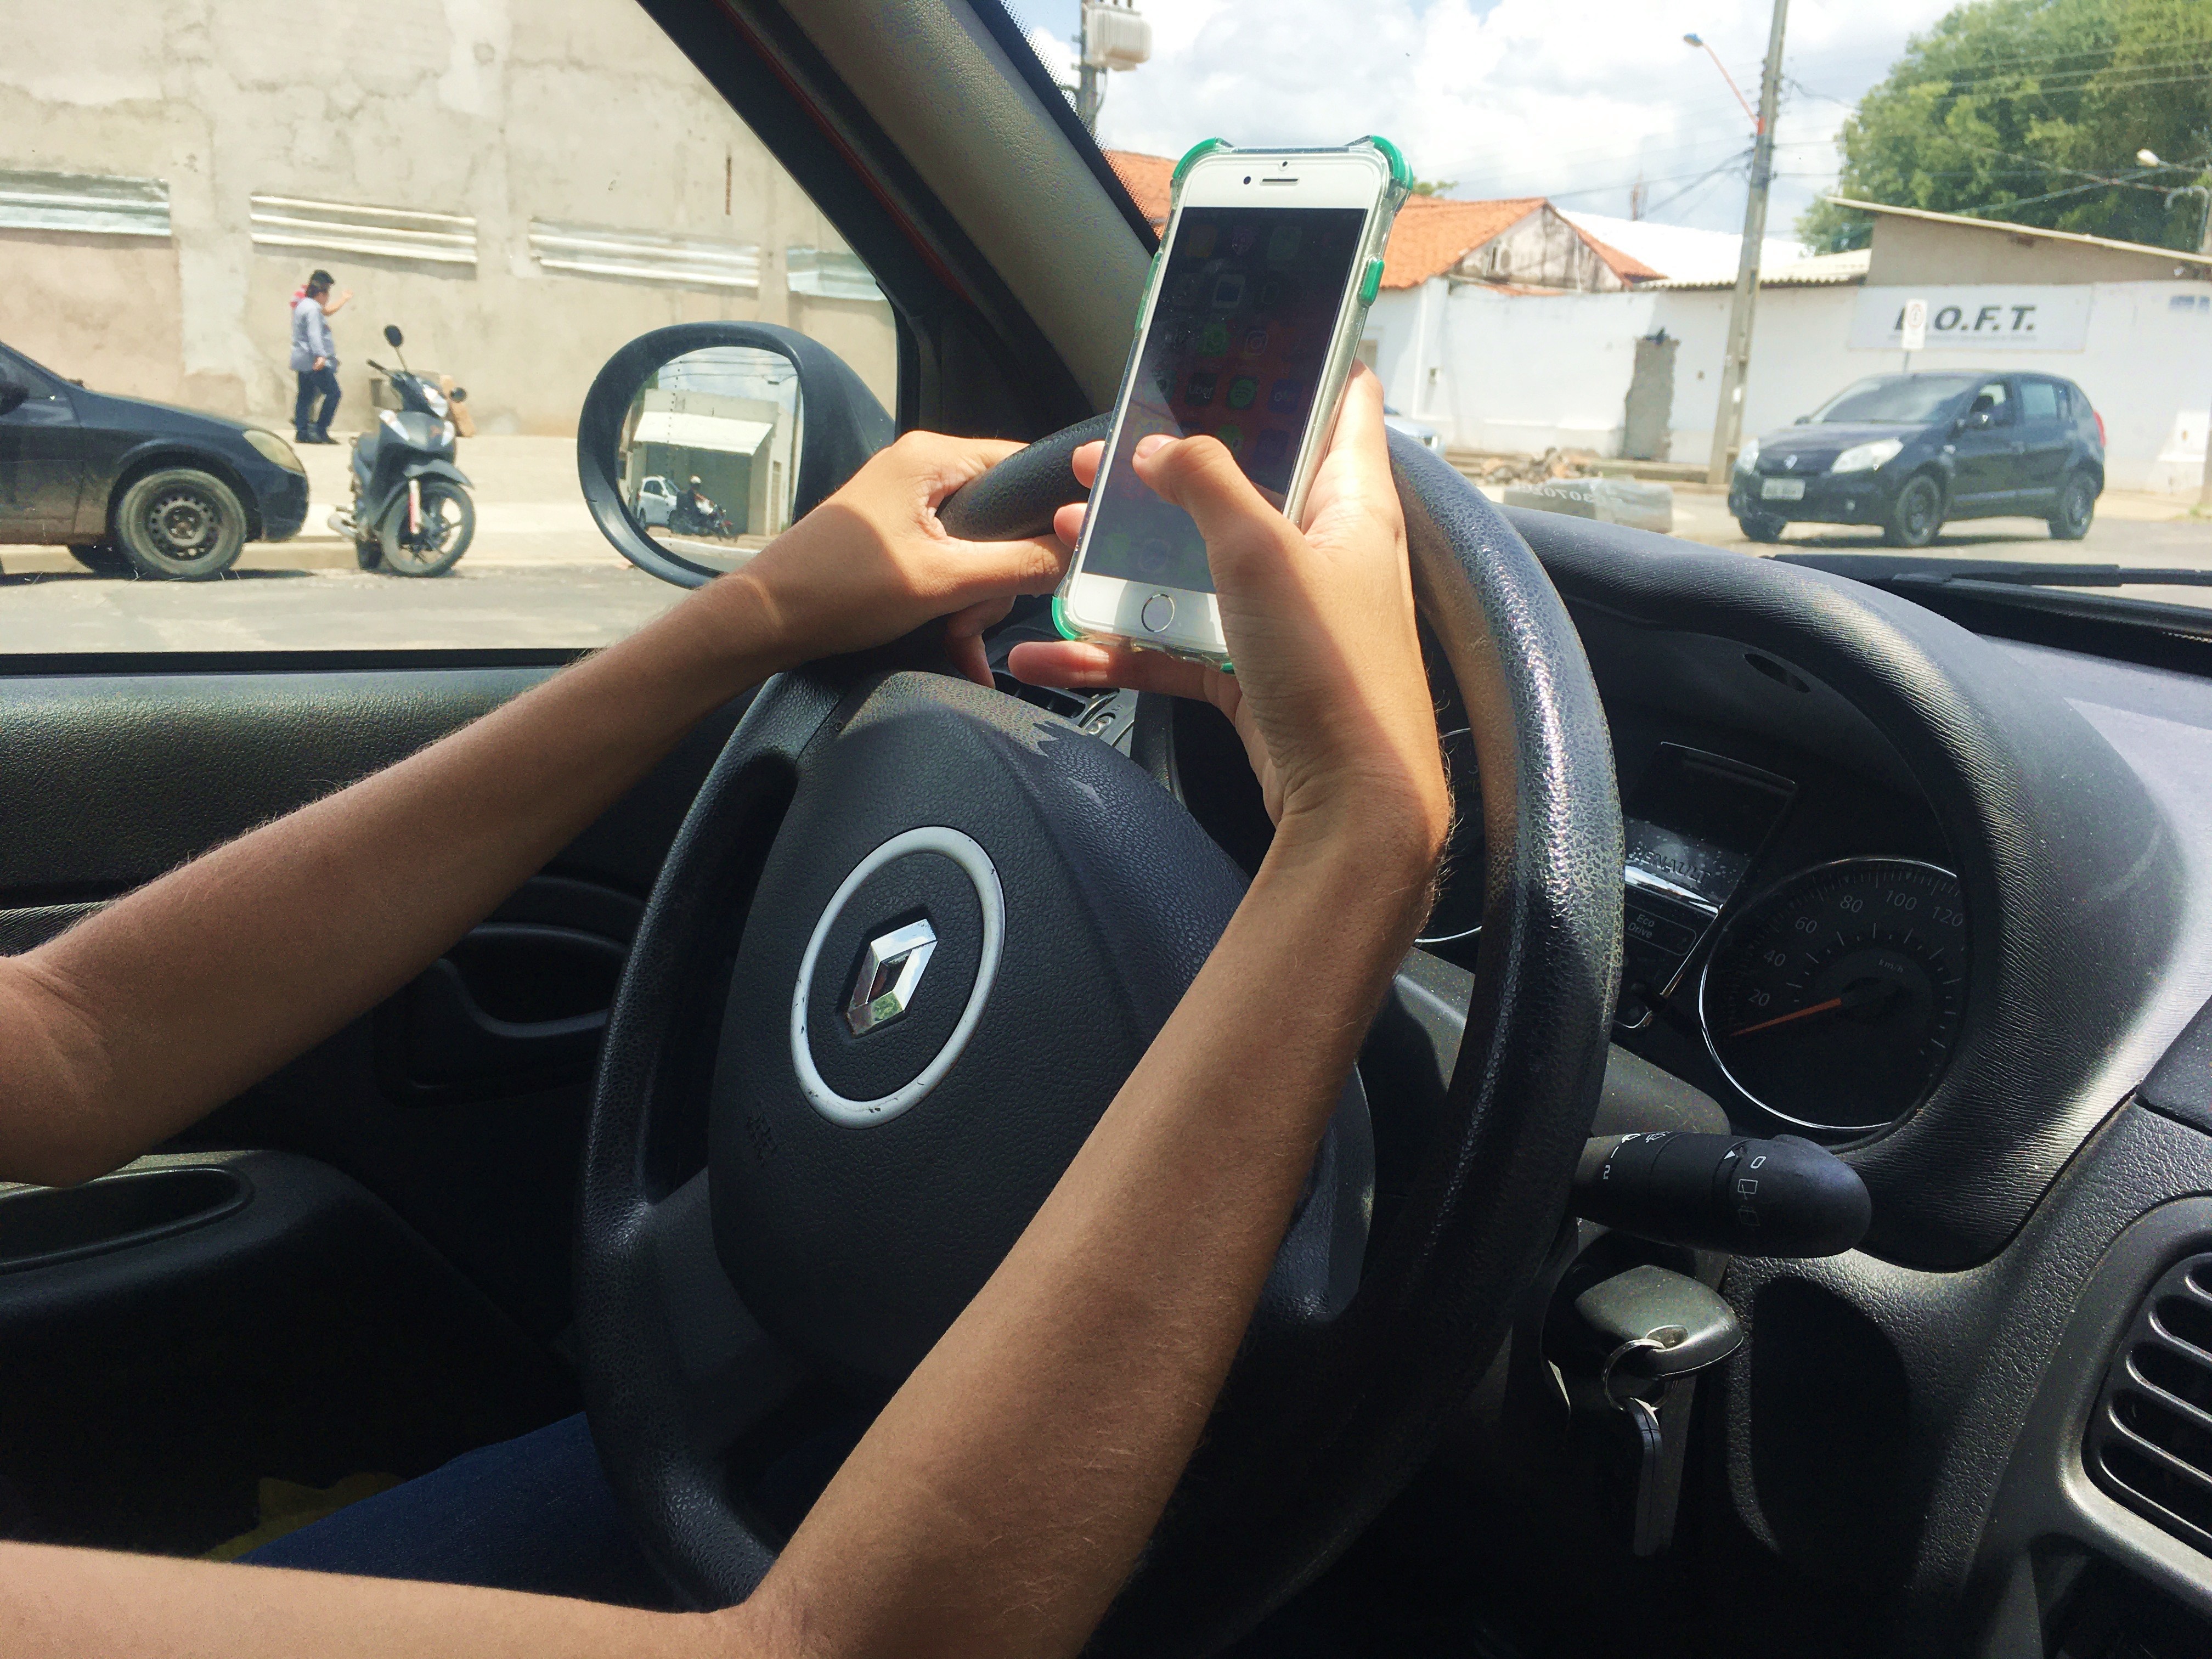 Aumenta para 36% o número de infrações no trânsito pelo uso de celular, segundo a Strans